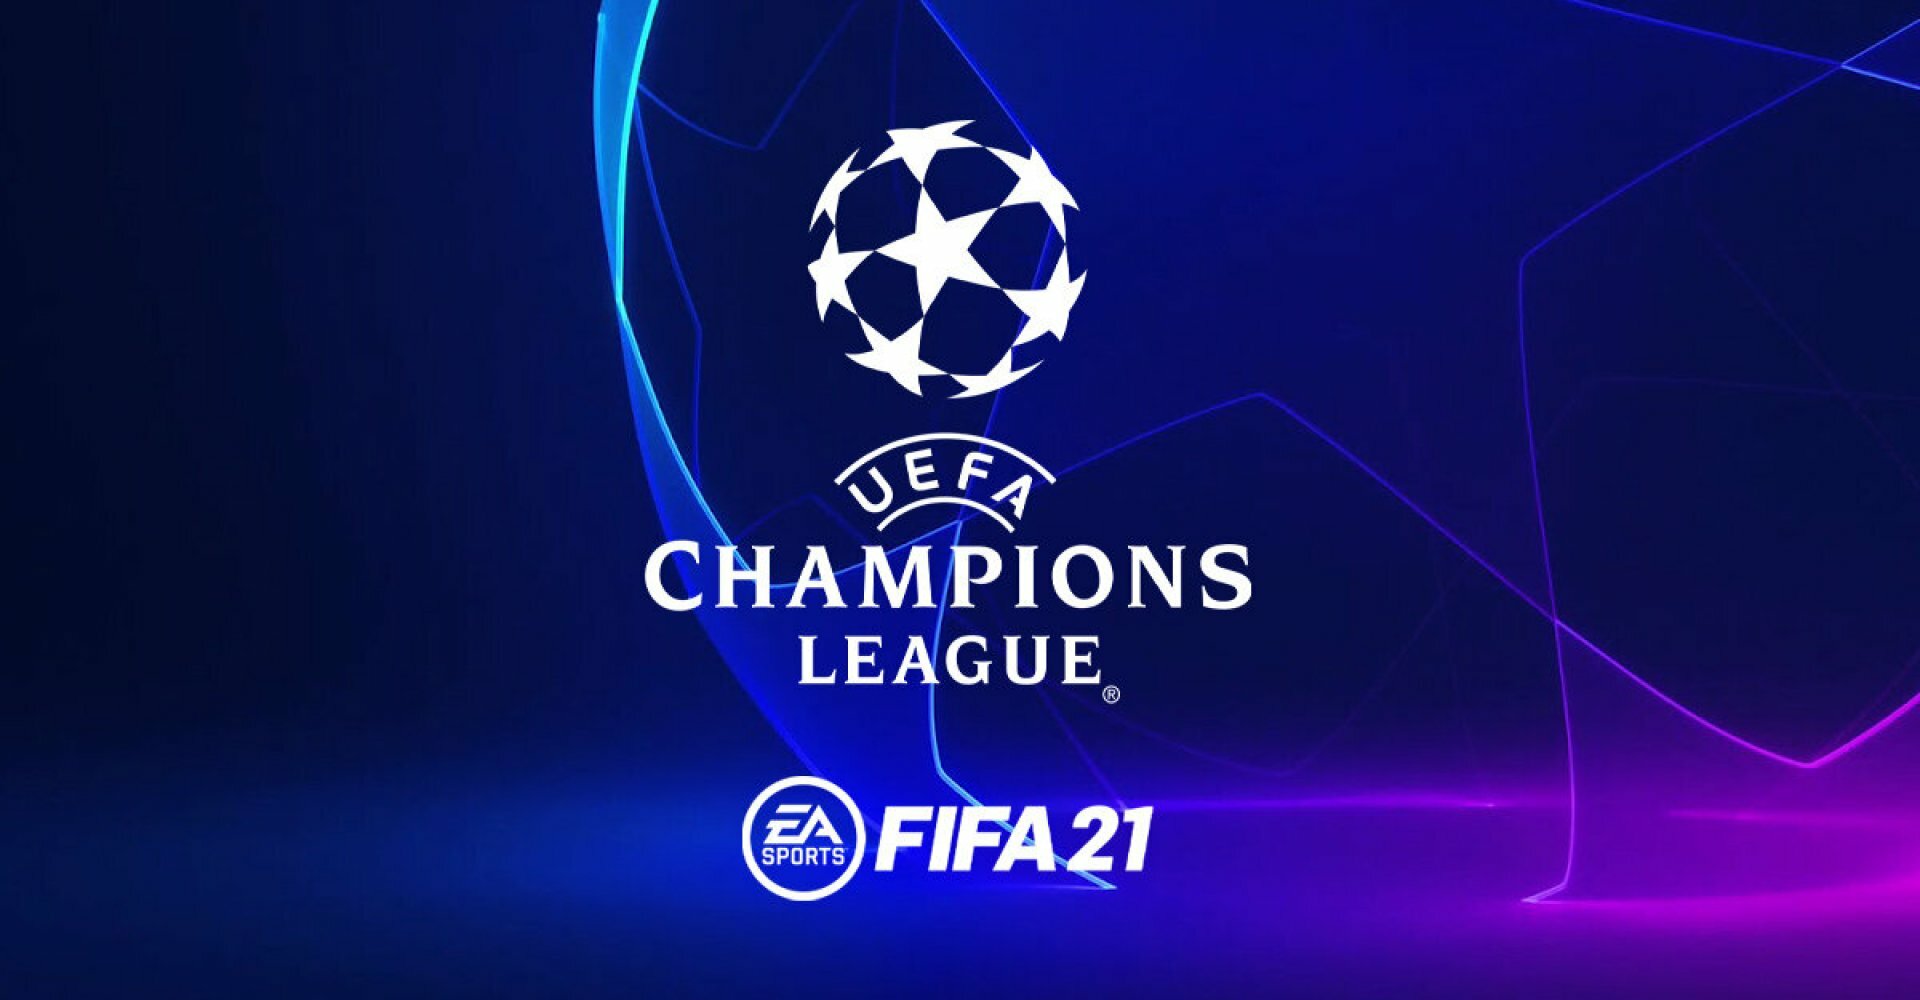 Футбол лига фифа. ФИФА И УЕФА. Лига чемпионов ФИФА. ФИФА ЛЧ. FIFA 21 Champions League.